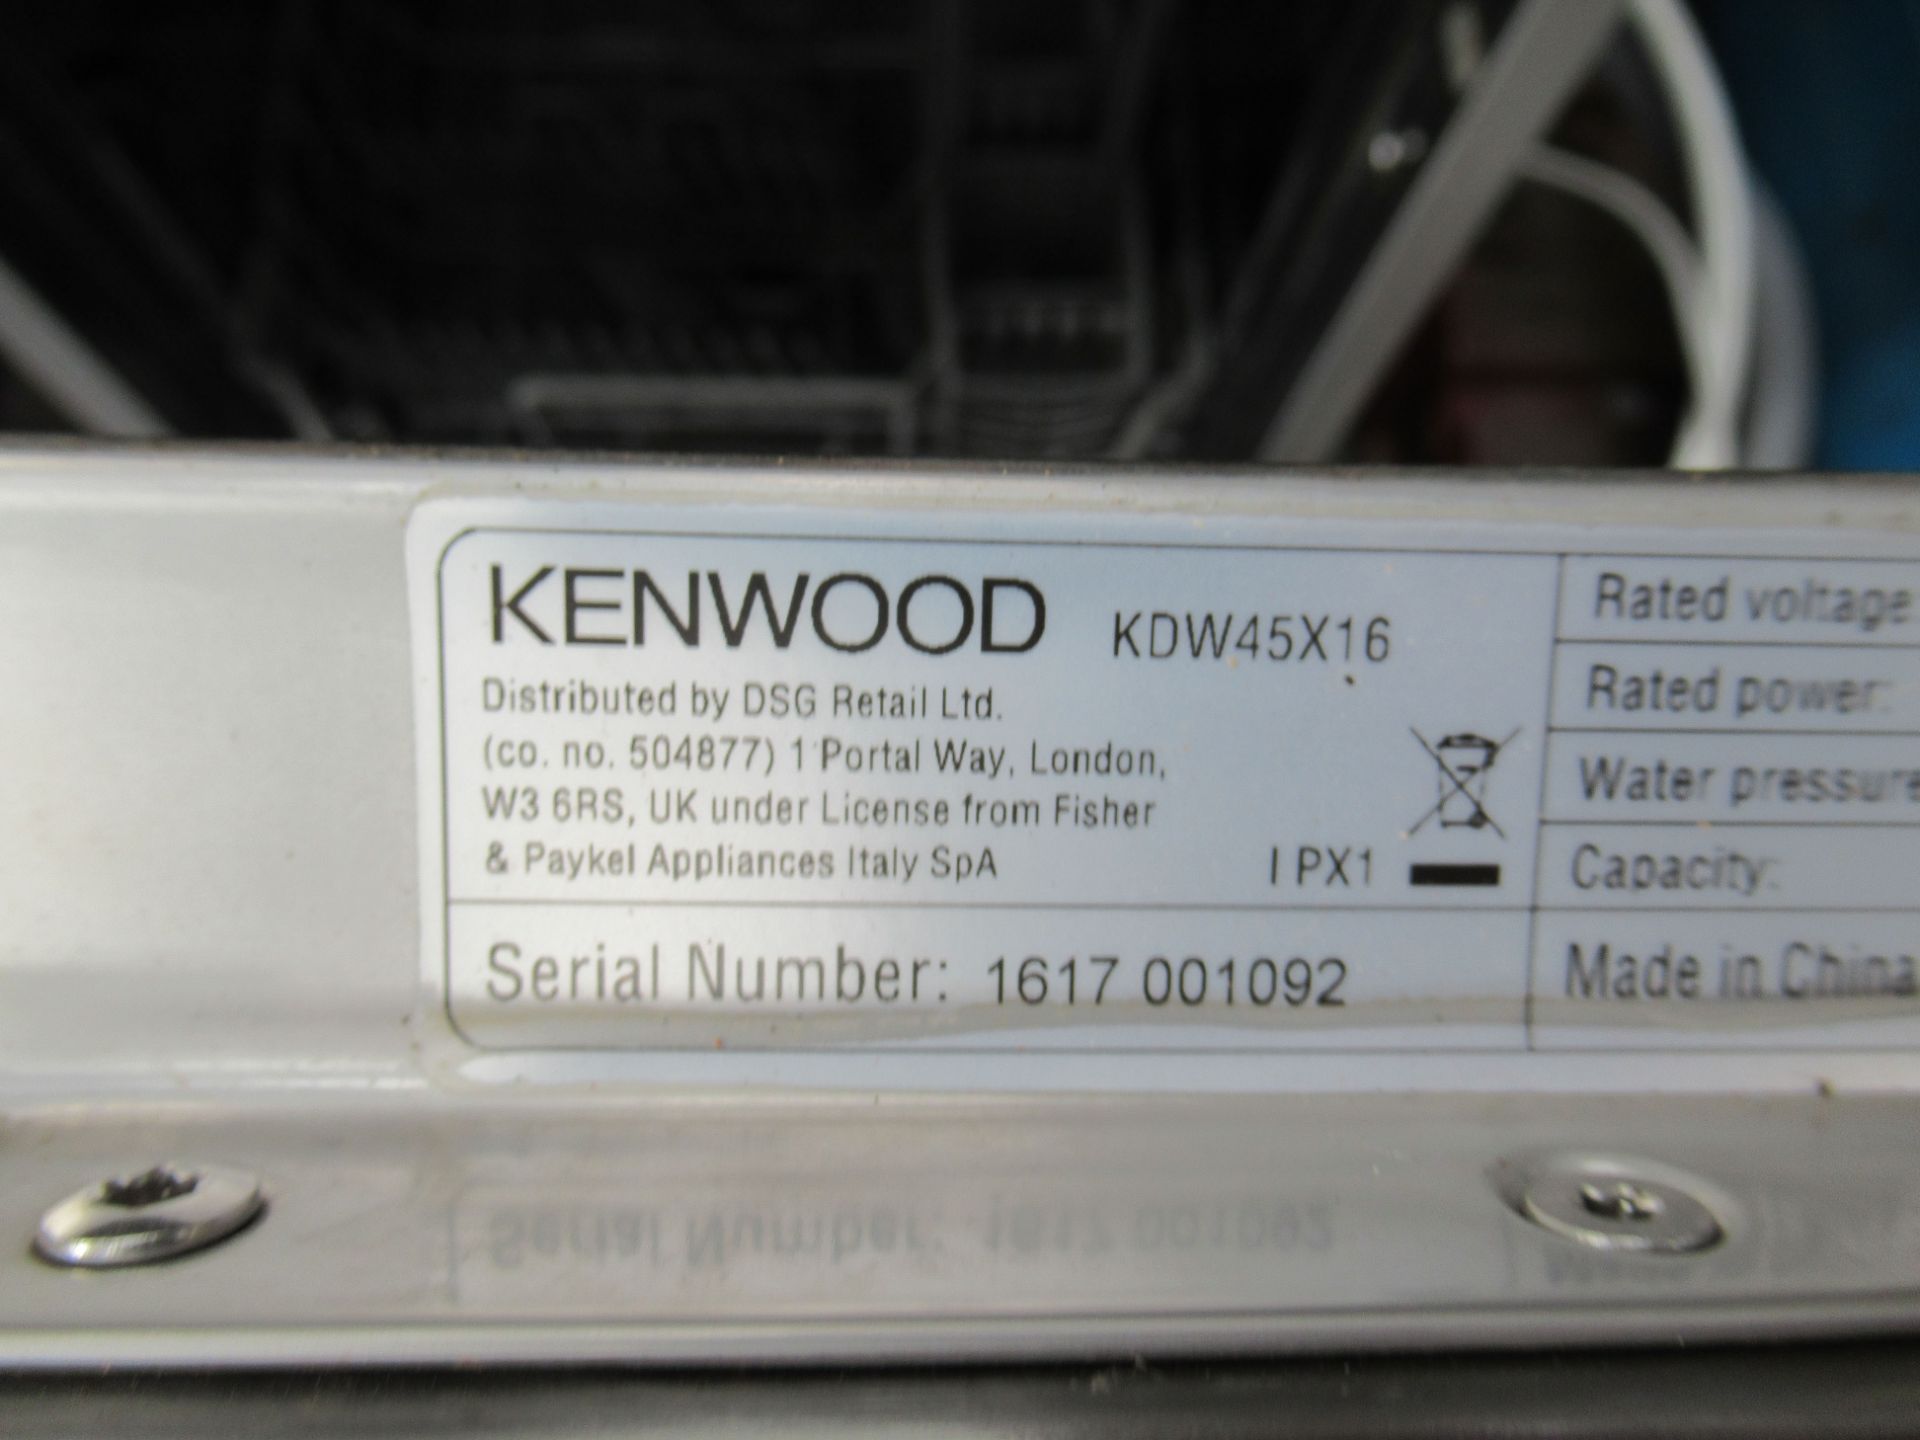 Kenwood KDW45X16 Slimline Dishwasher - Image 3 of 4